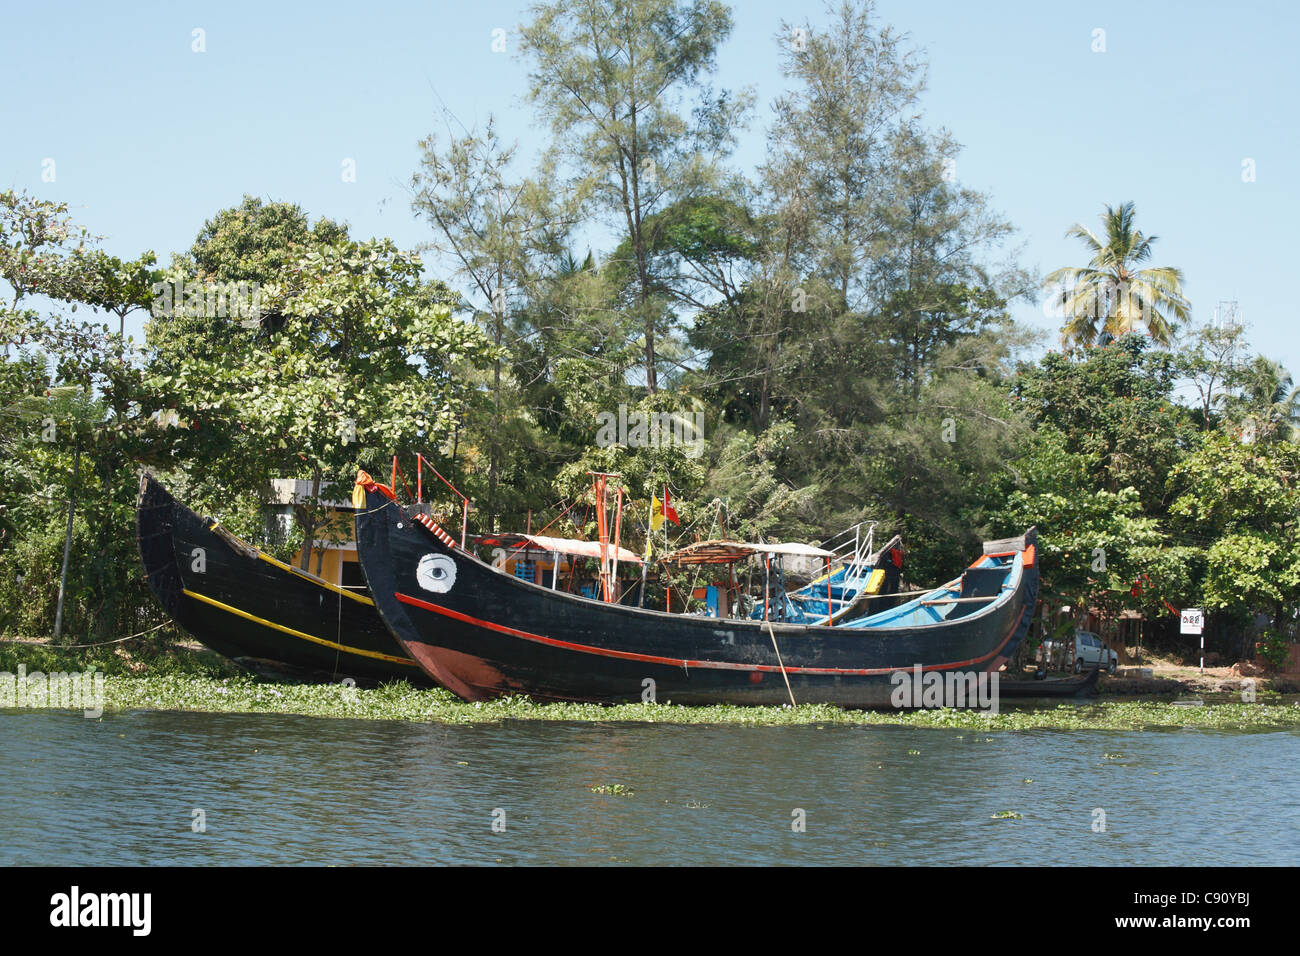 Kettuvallam sono un genere distintivo della grande barca si trovano nelle acque intorno a Cochin. Ci sono ancora barche da lavoro sul Foto Stock